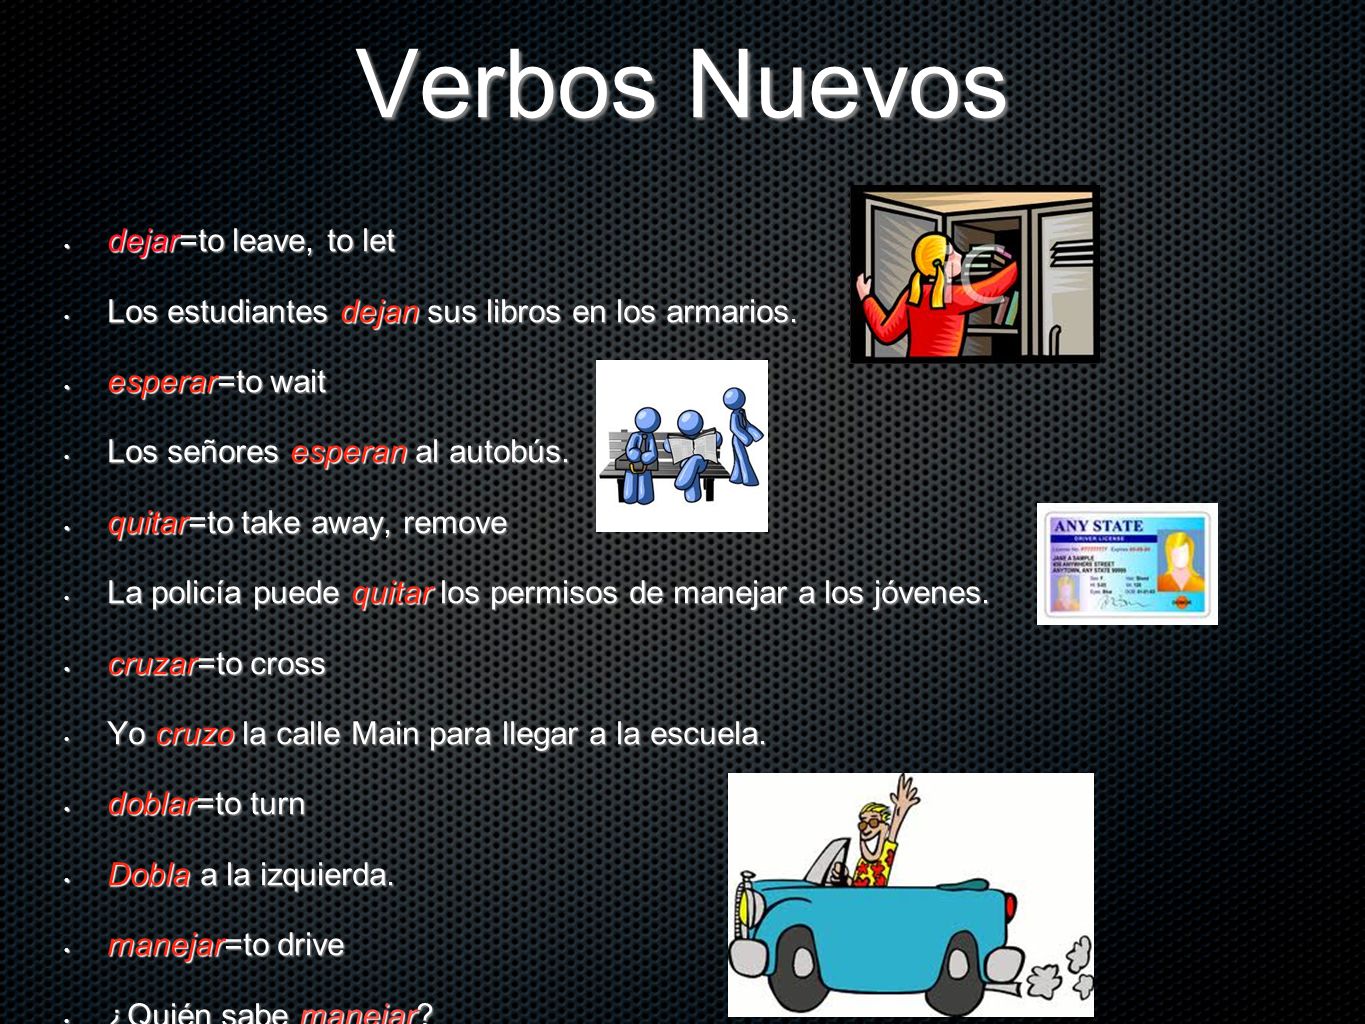 Verbos Nuevos dejar=to leave, to let